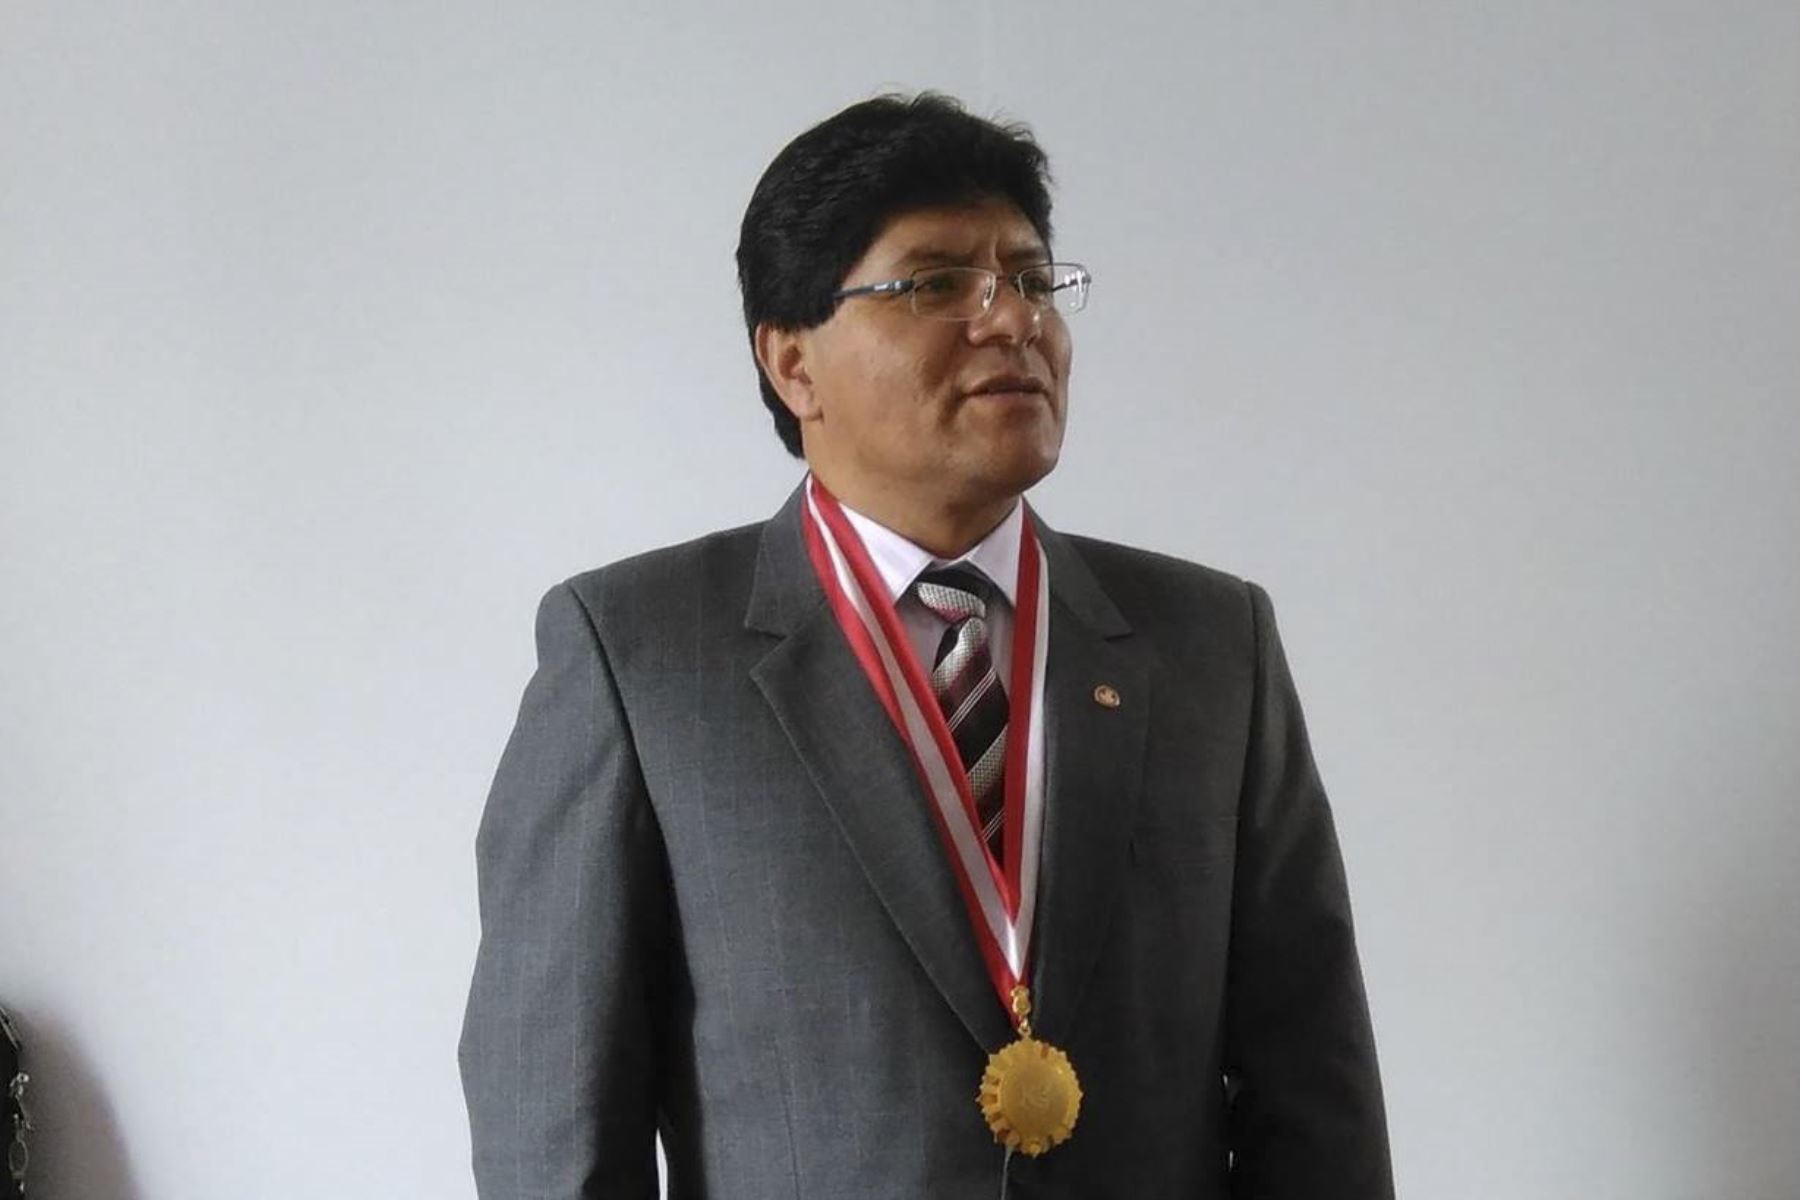 Presidente de EsSalud Alegre Raúl Fonseca Espinoza